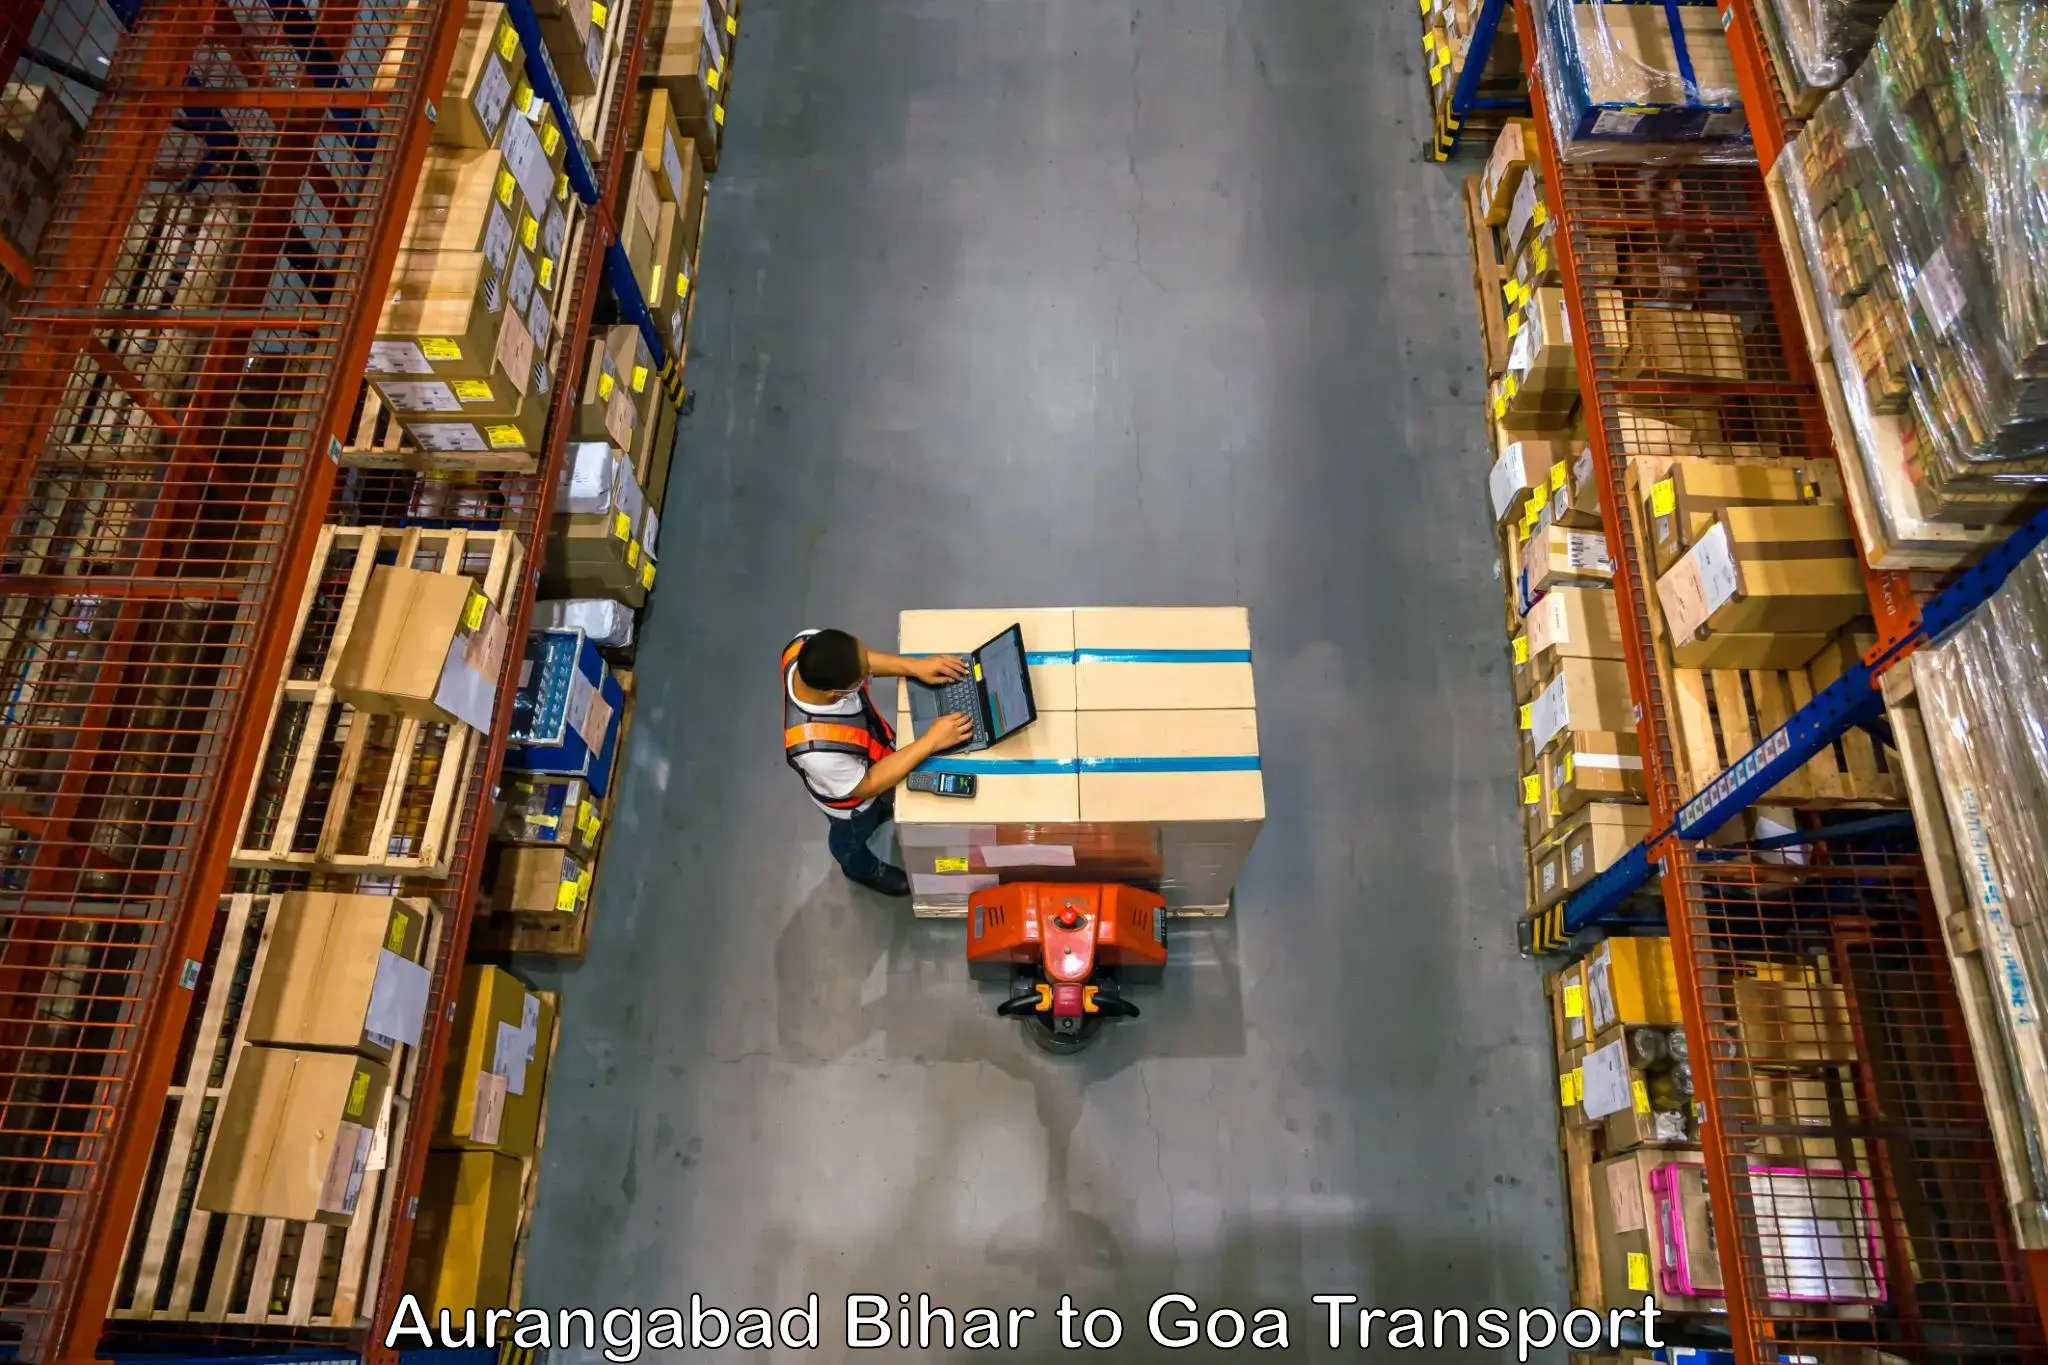 Transportation services Aurangabad Bihar to IIT Goa